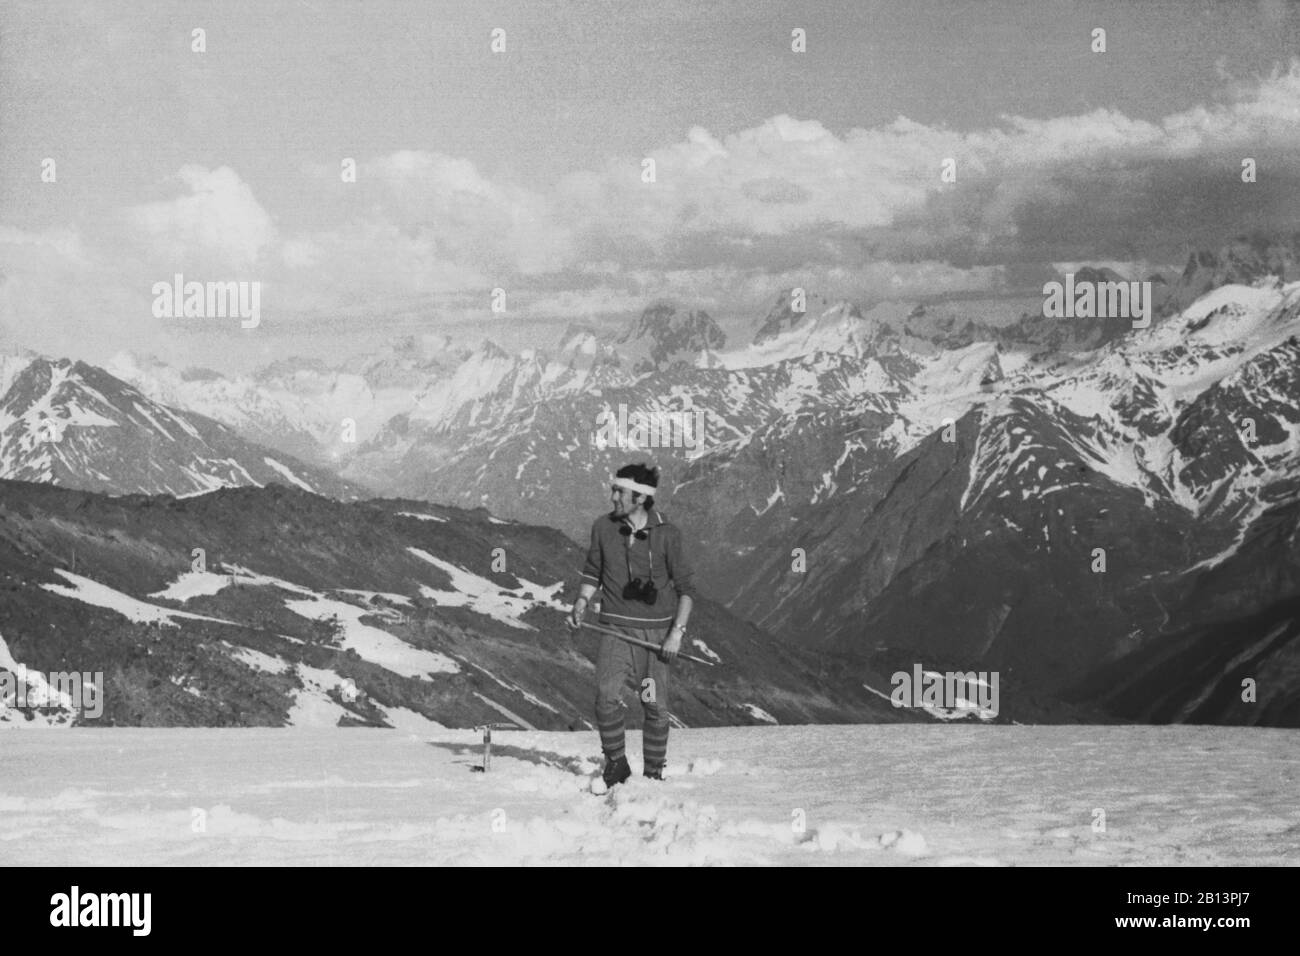 VERS 1970. grimpeur sur un halt se dresse sur un fond de montagnes avec une hache de glace et des jumelles. Montagnes du Caucase Banque D'Images